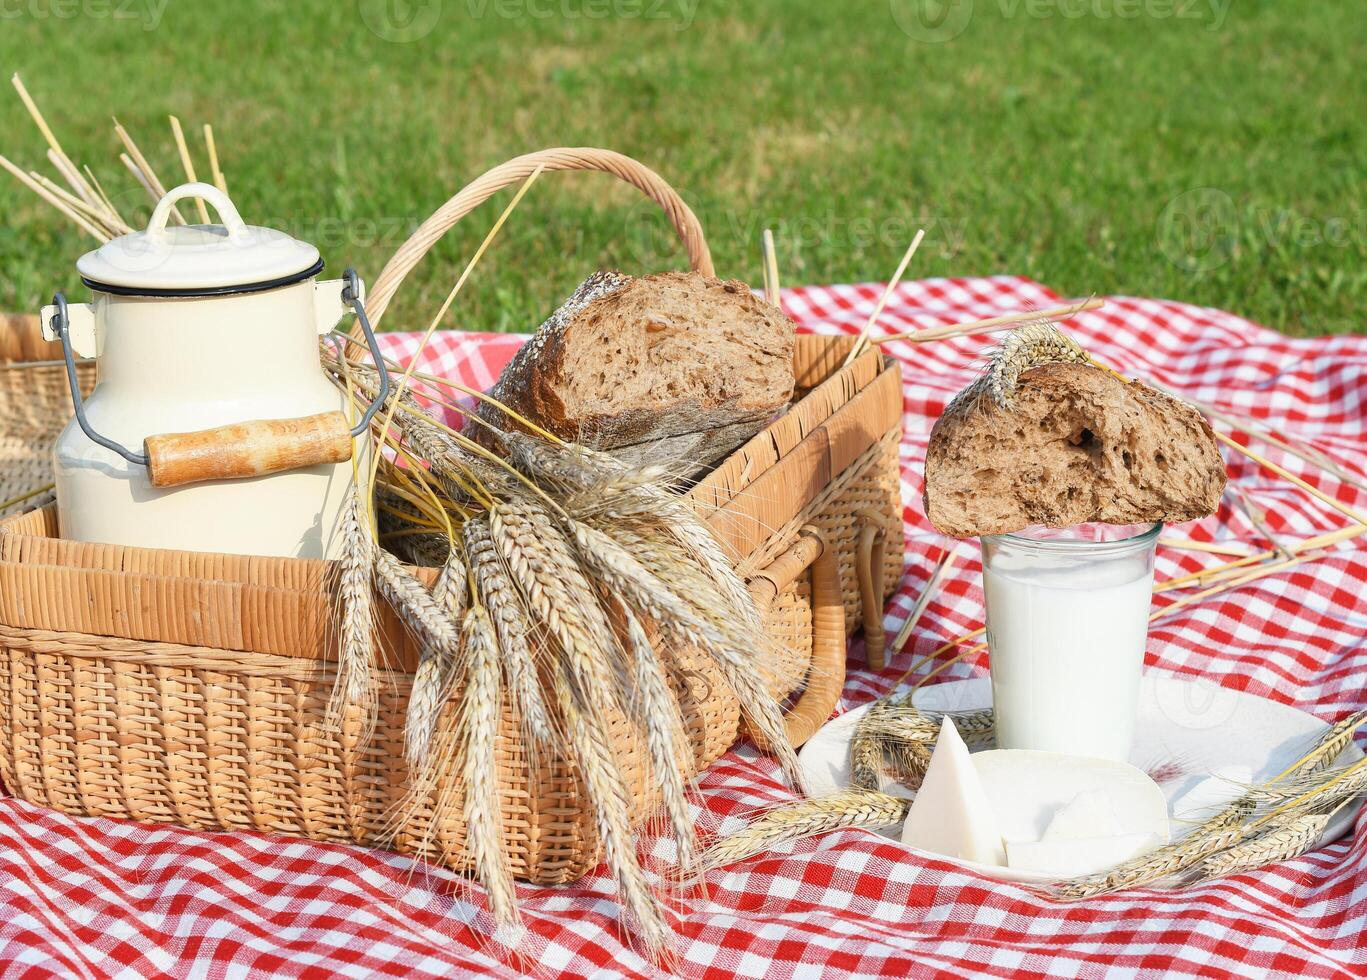 Picknick mit frisch Brot und Milch auf ein rot kariert Tagesdecke auf ein Grün Rasen foto